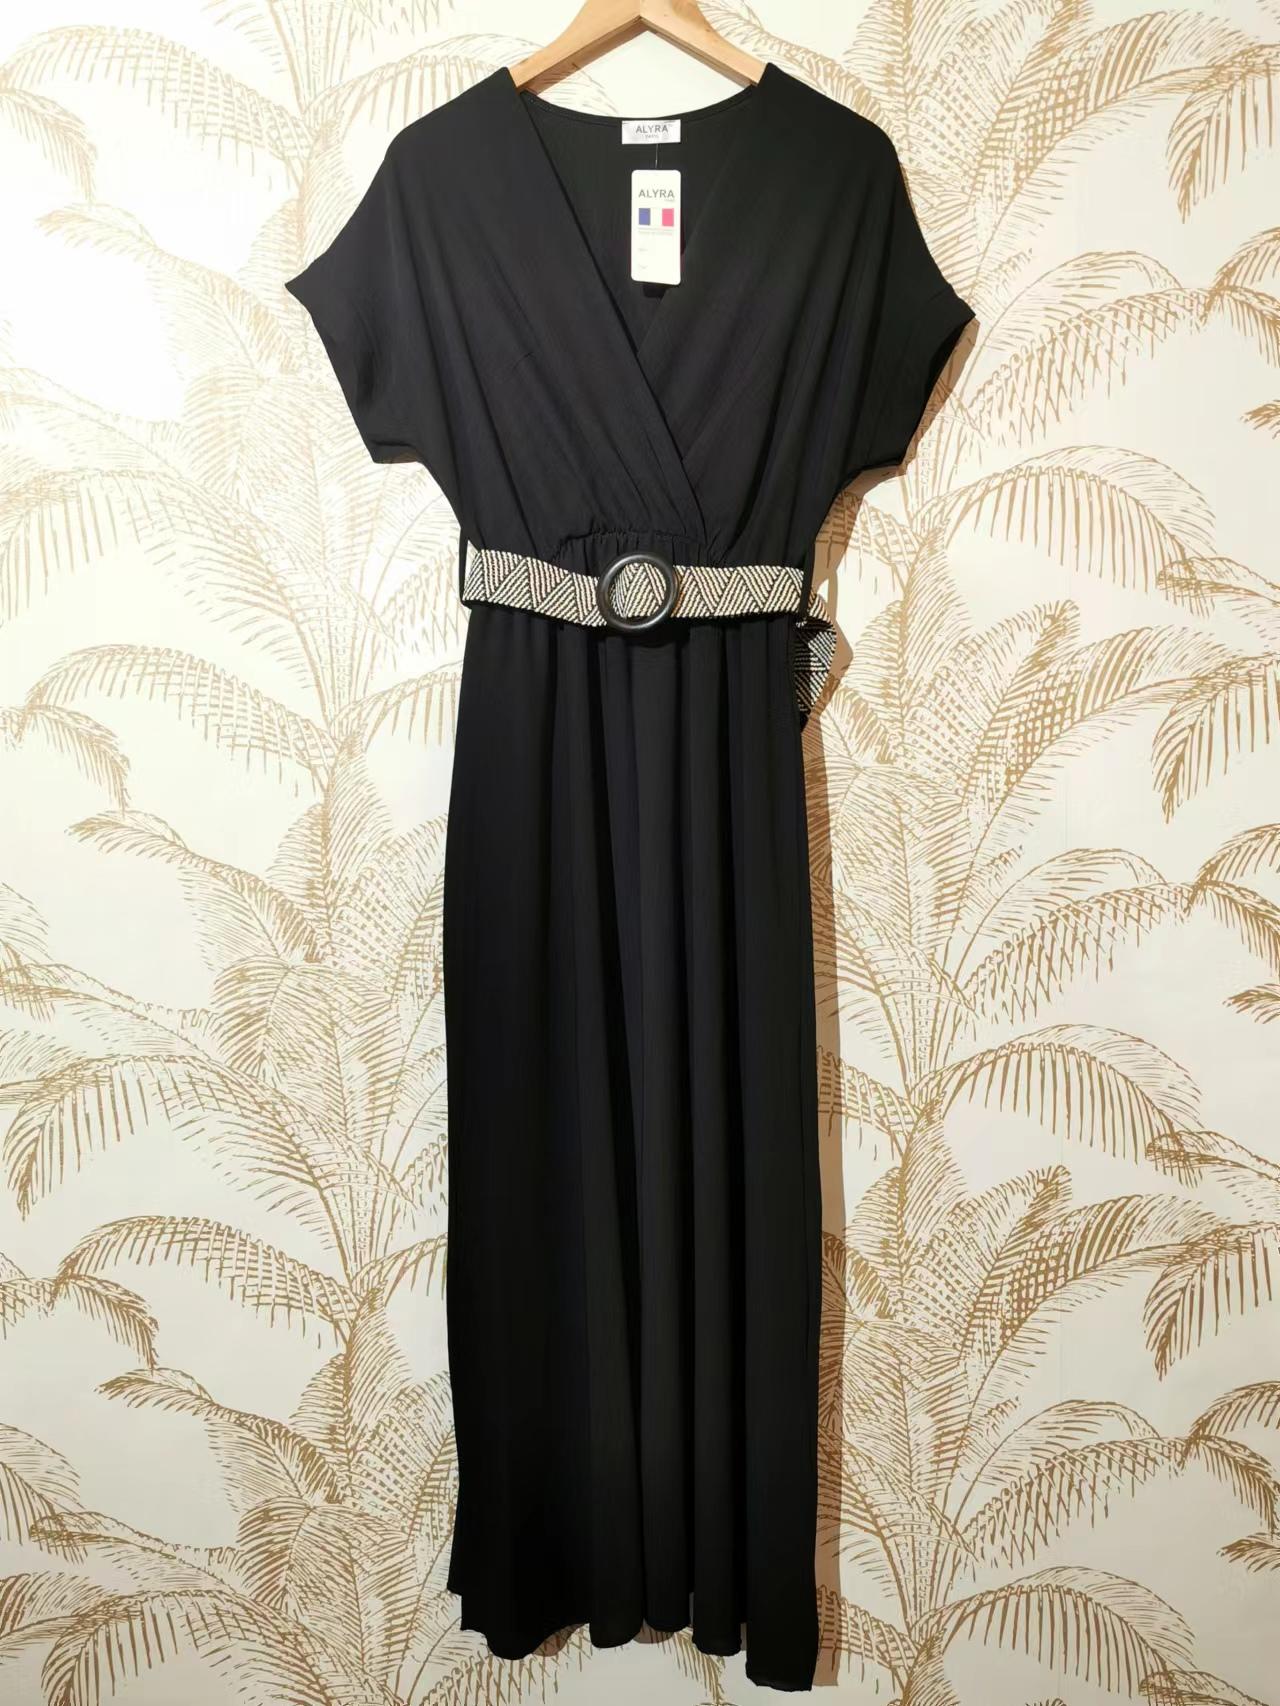 Robes longues Femme Noir ALYRA 936-UNI-PE22 #c Efashion Paris